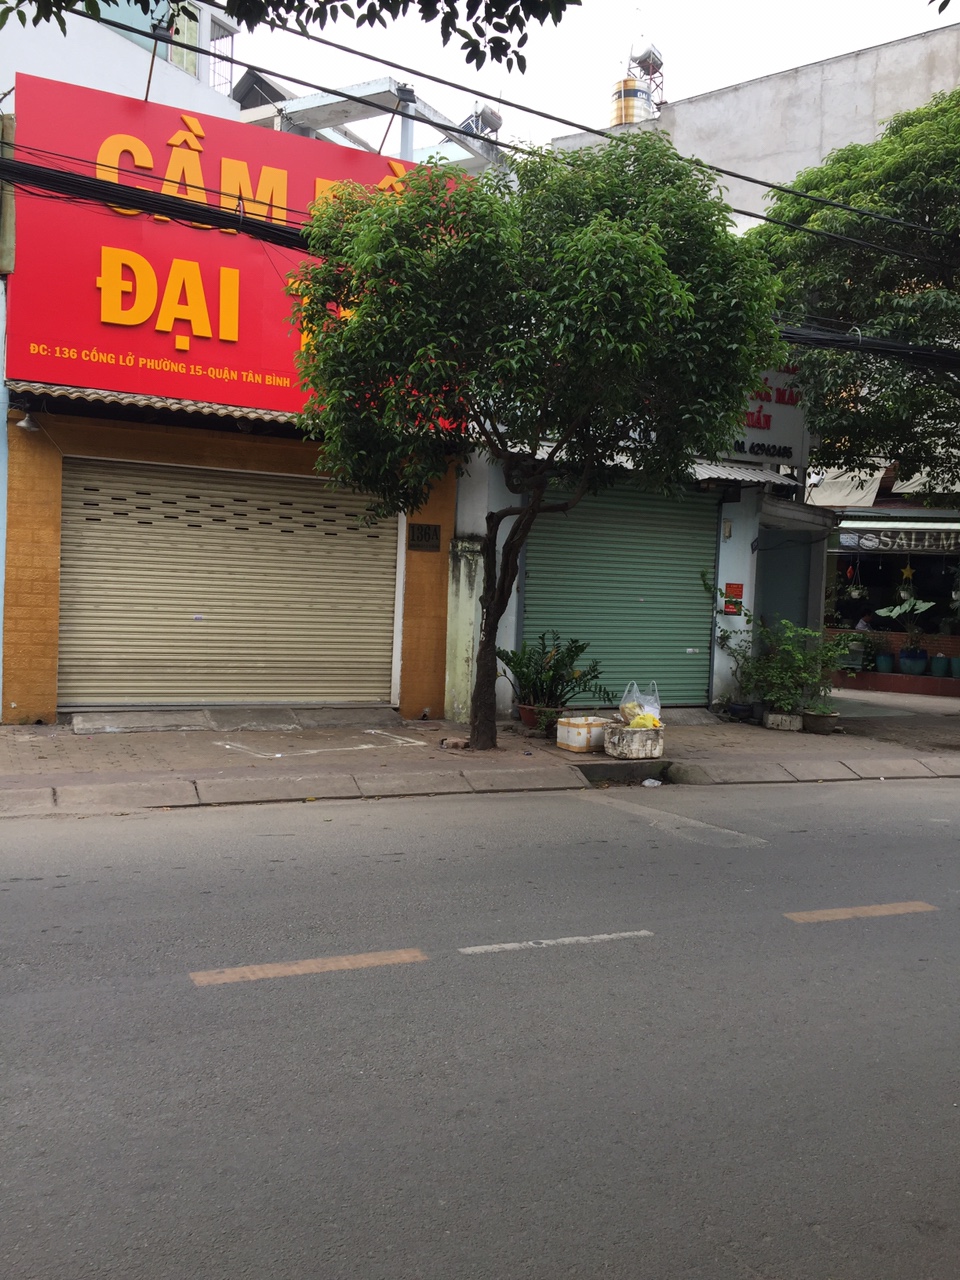 Bán nhà mặt tiền Cống Lở quá rẻ, P15, Tân Bình, DT 64m2.